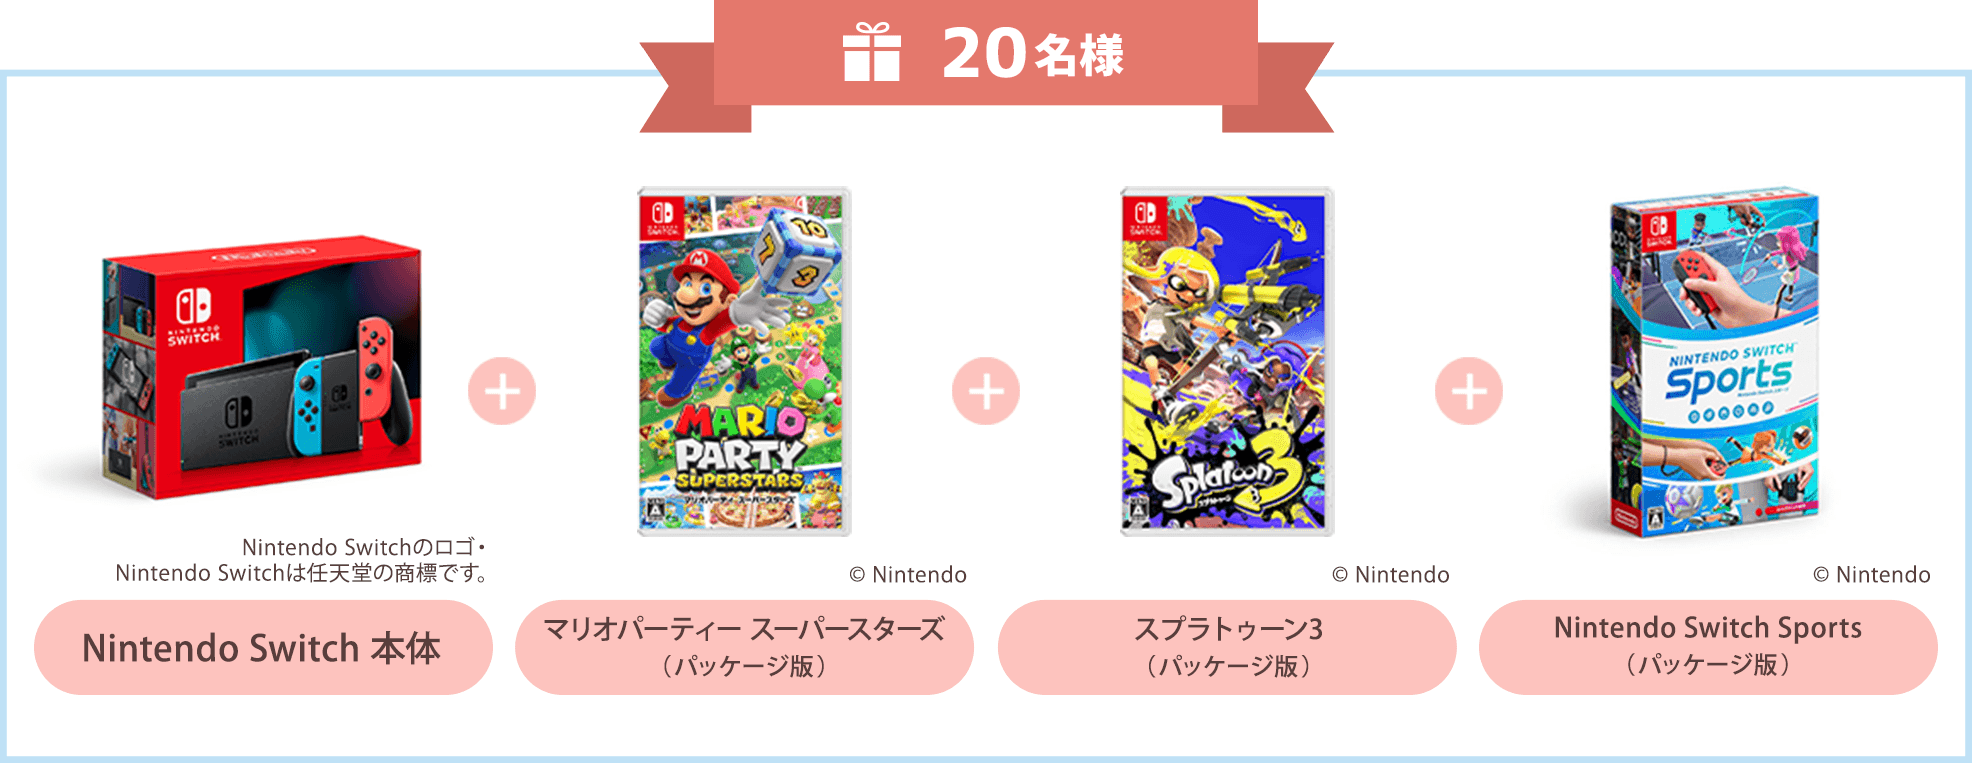 20名様 Nintendo Switch 本体、Nintendo Switch Sports（パッケージ版）、マリオパーティー スーパースターズ（パッケージ版）、スプラトゥーン3（パッケージ版）